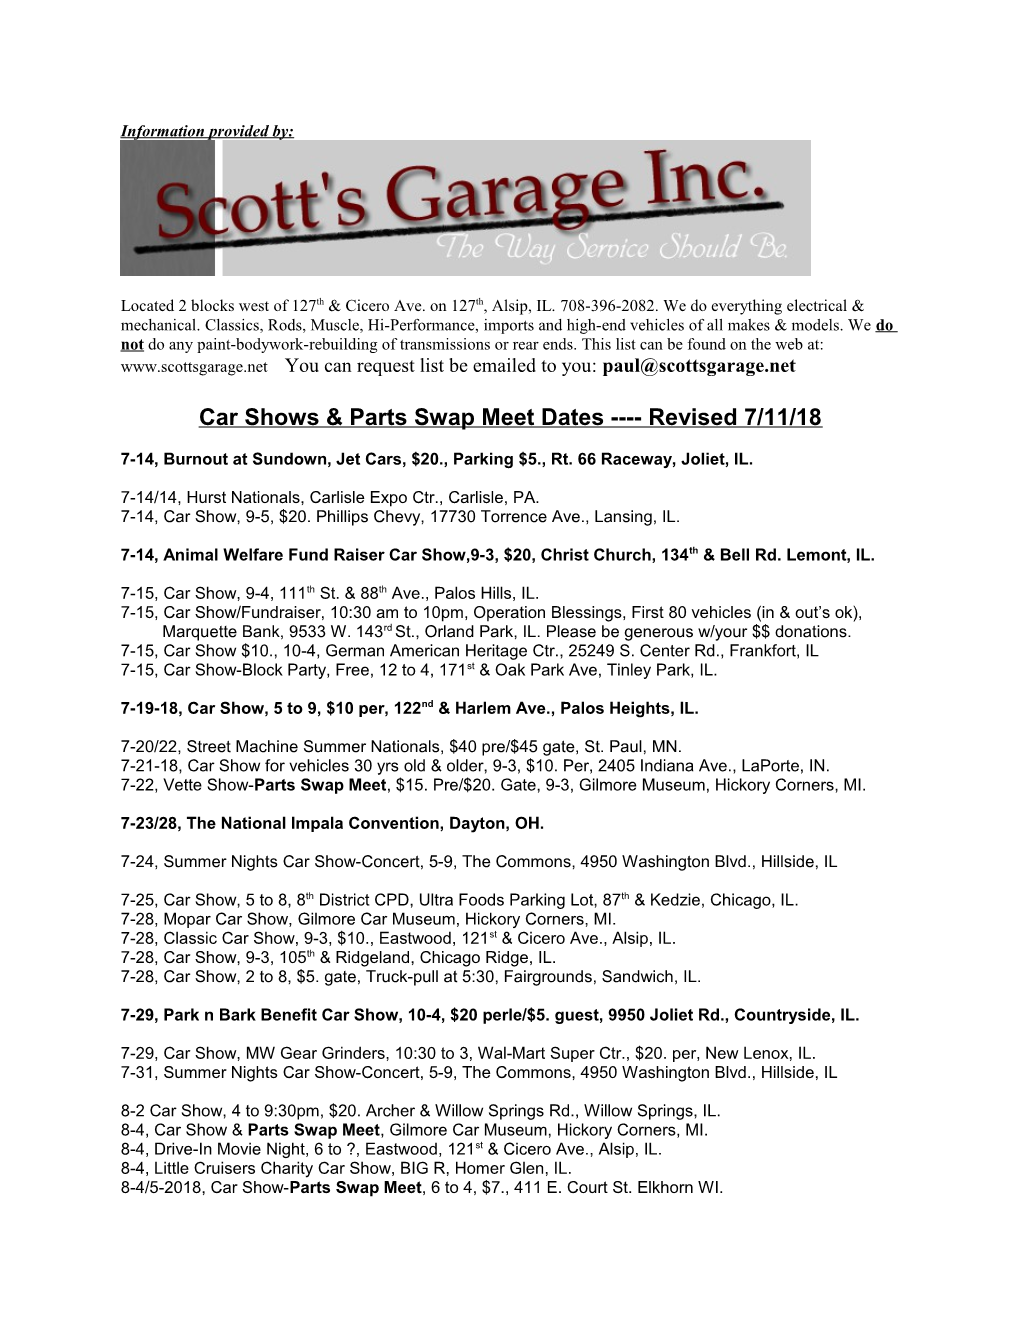 Car Shows & Parts Swap Meet Dates Revised 7/11/18